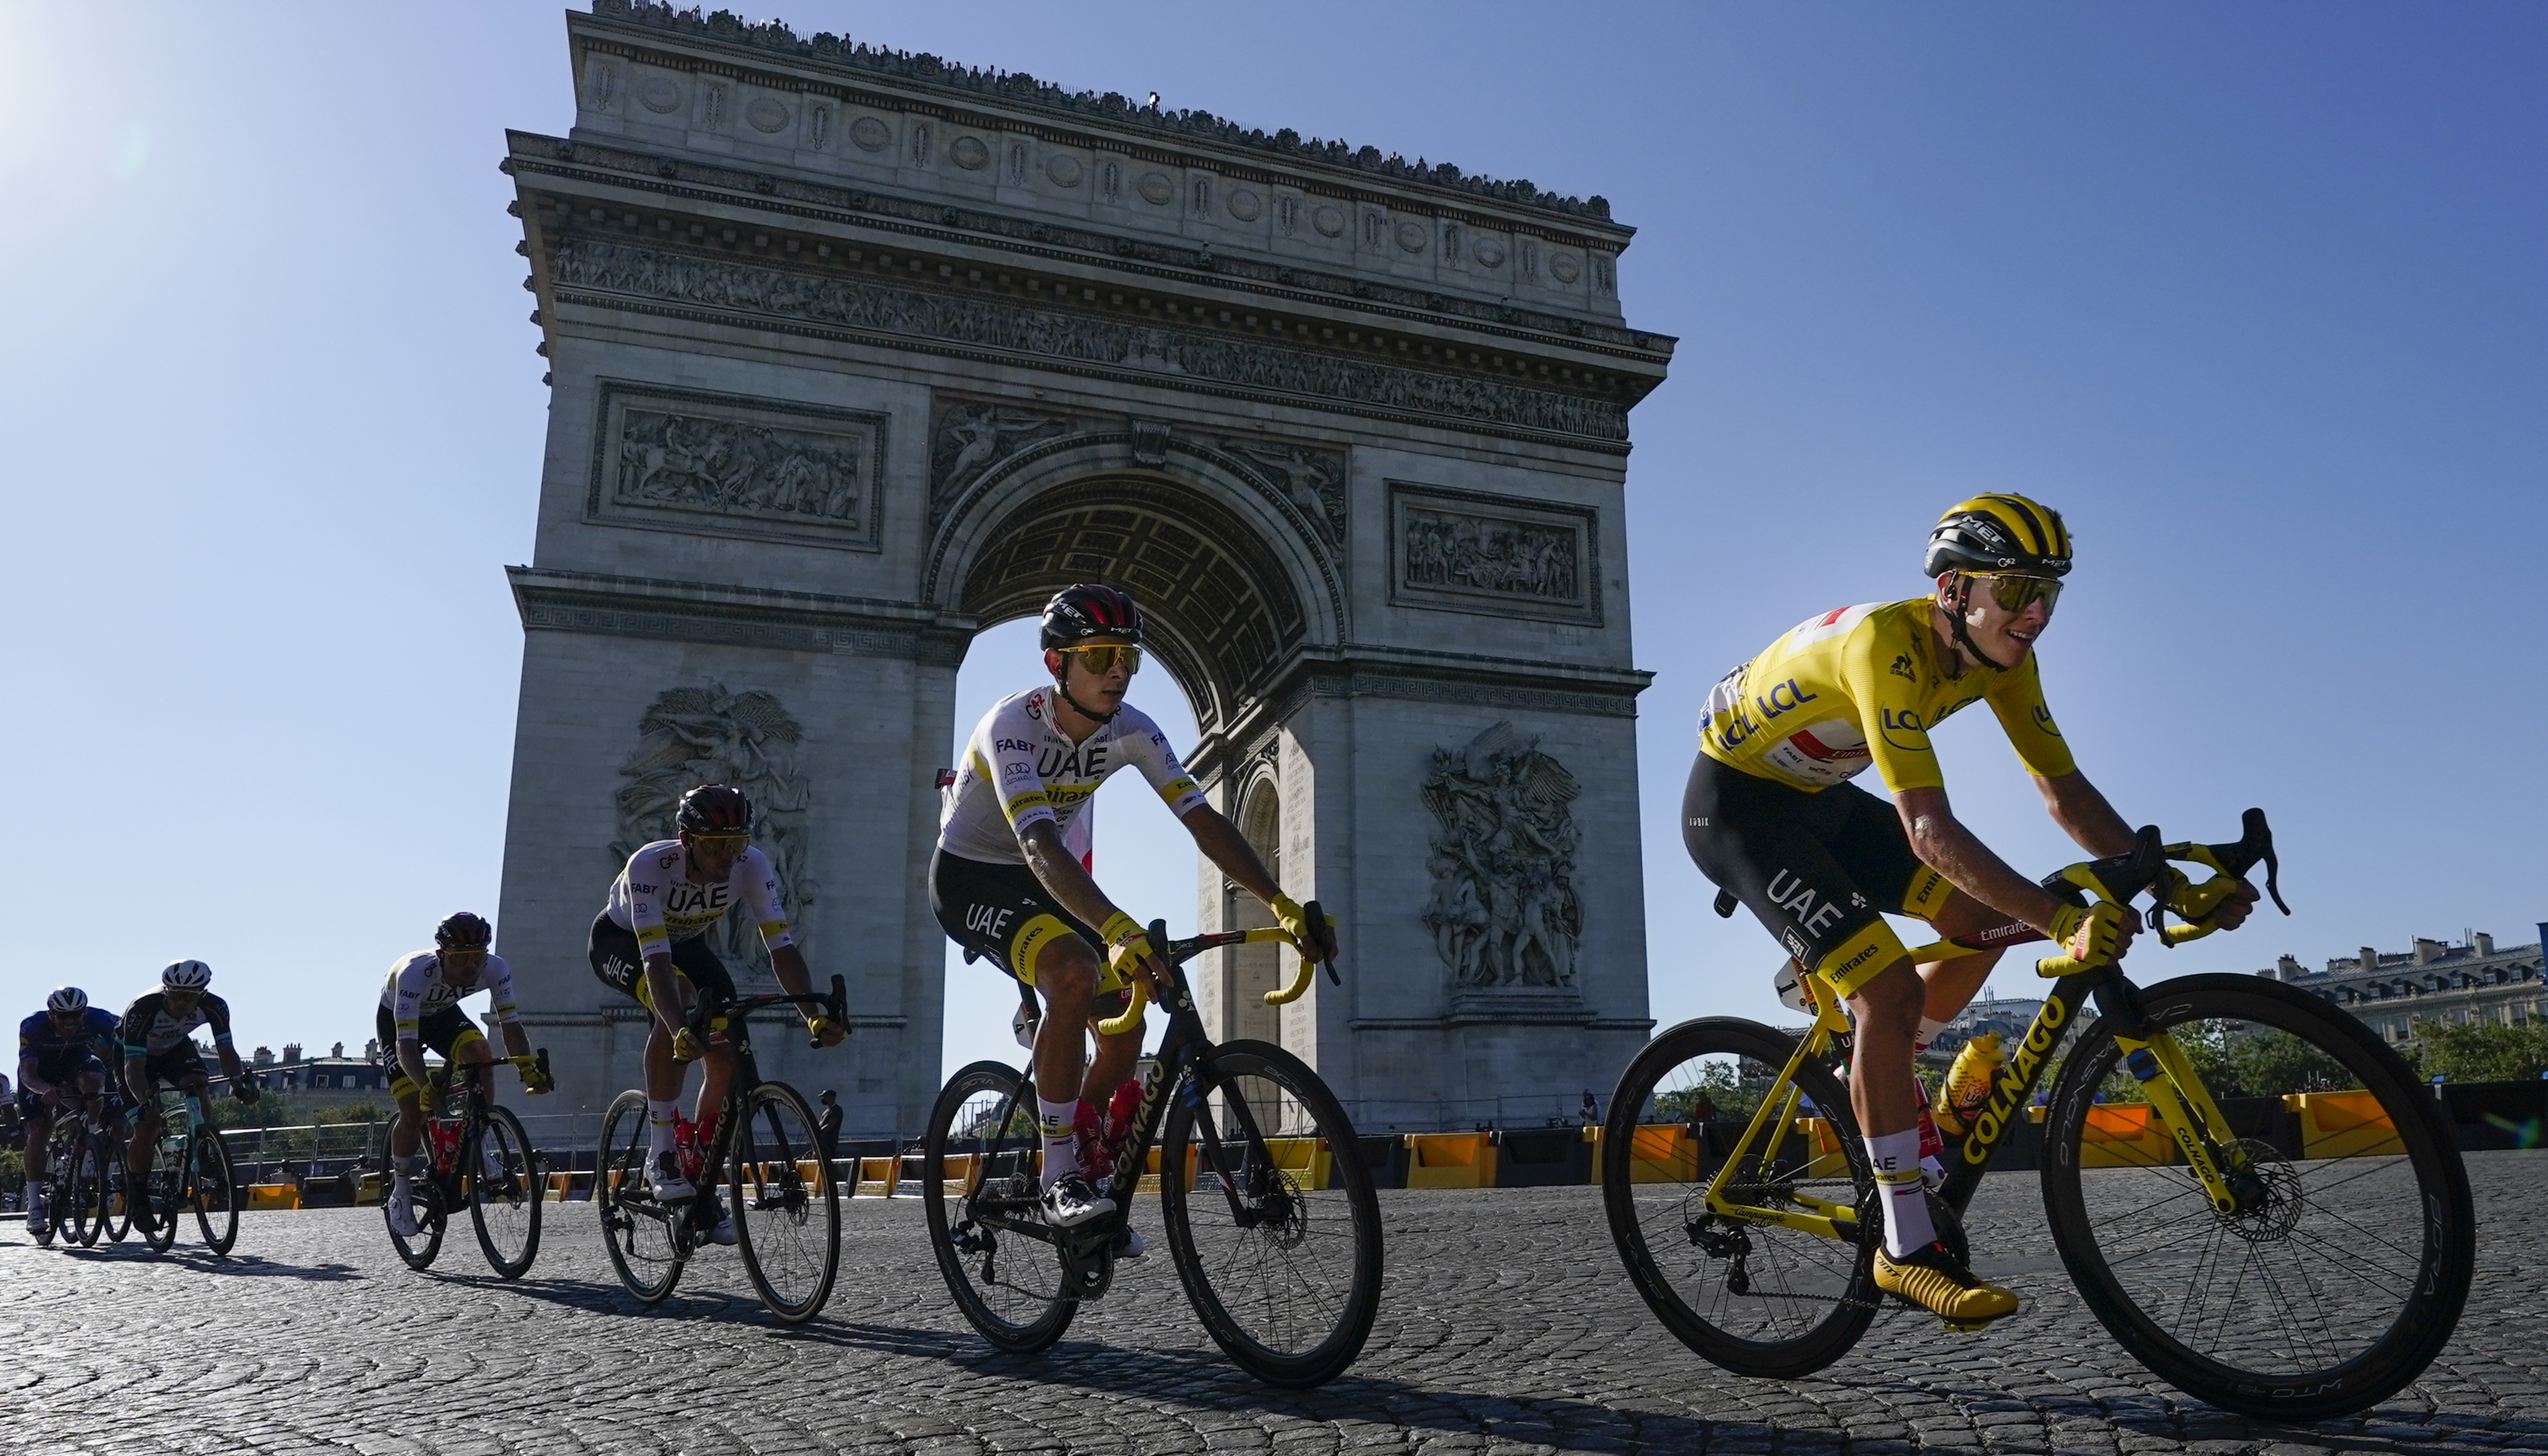 Programming changes on WNDU-TV for Tour de France